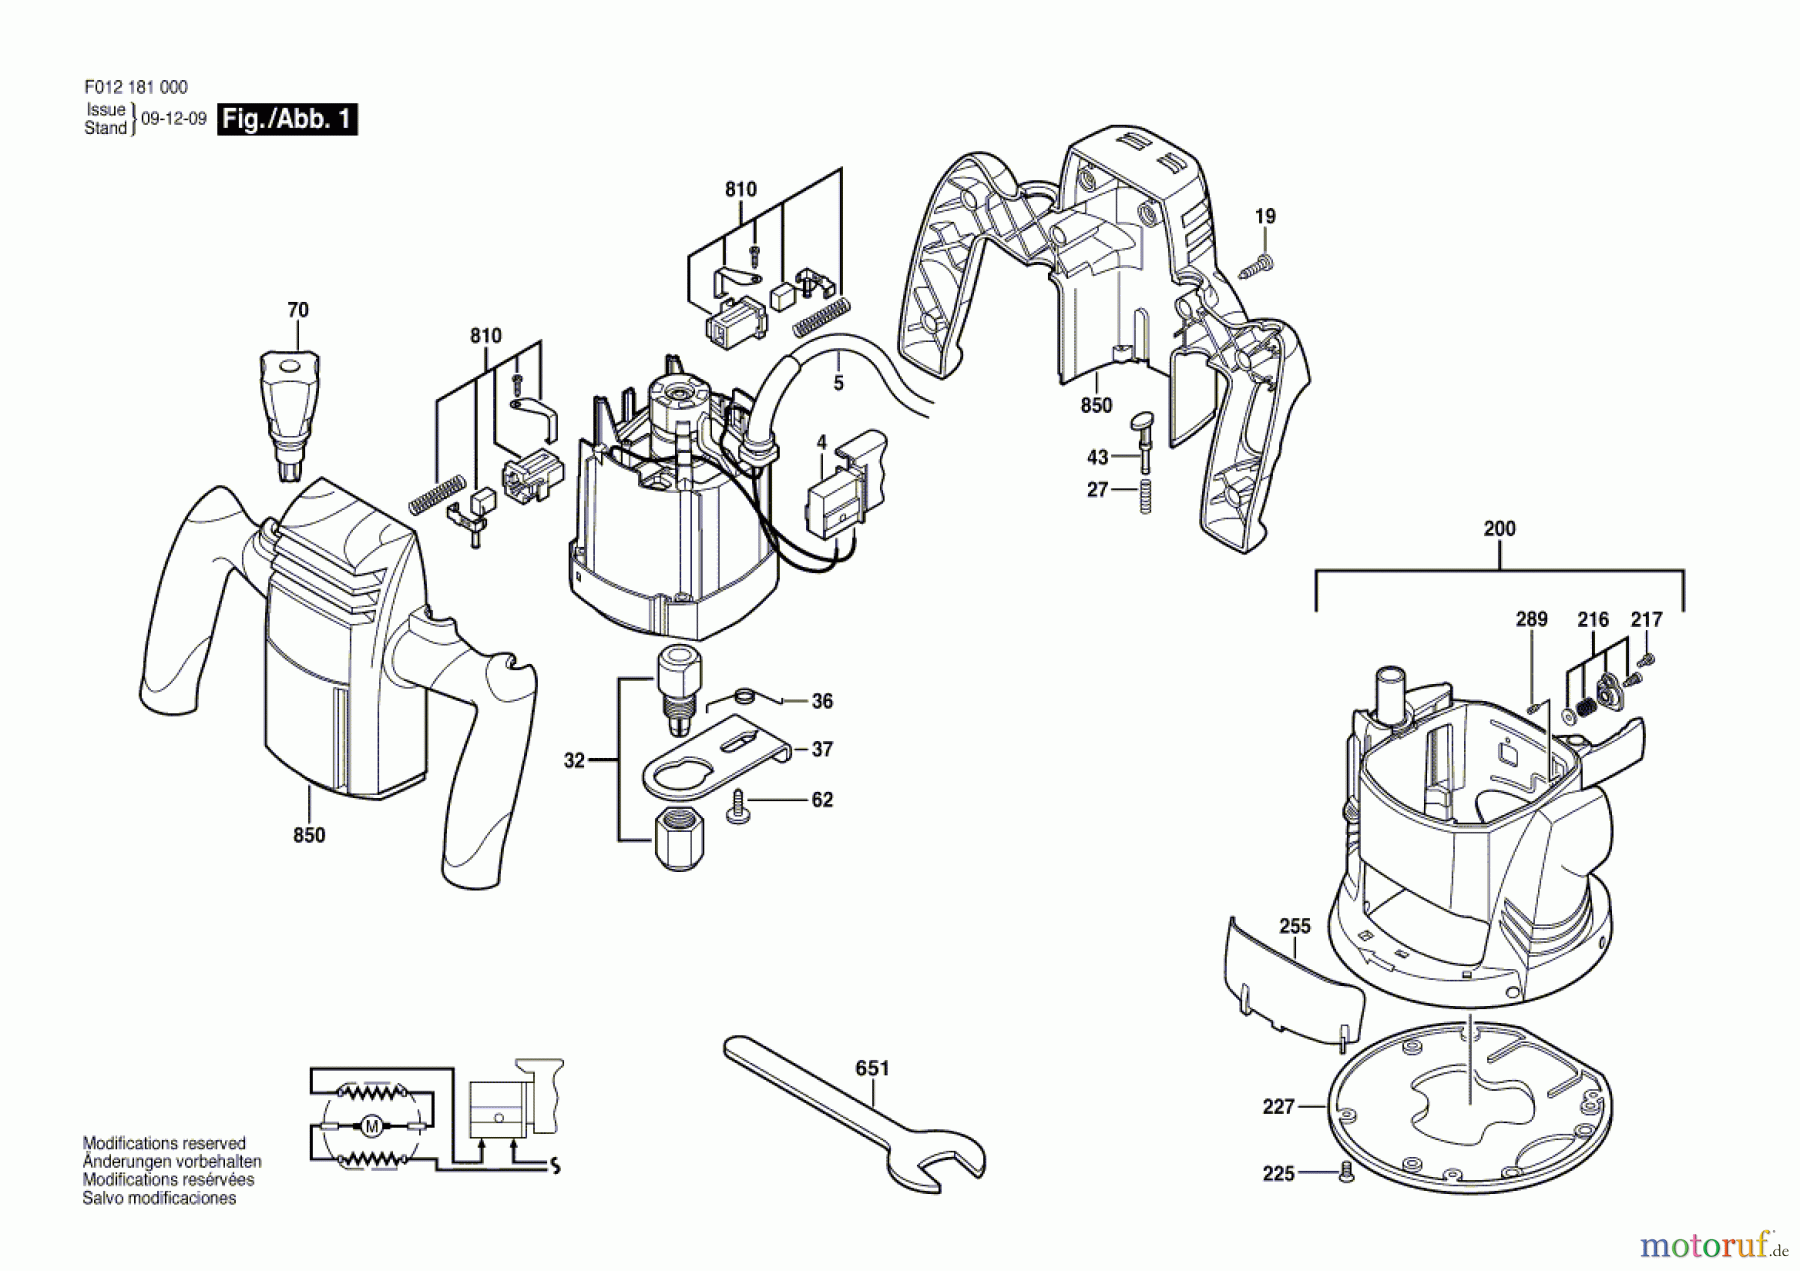  Bosch Werkzeug Oberfräse ---- Seite 1